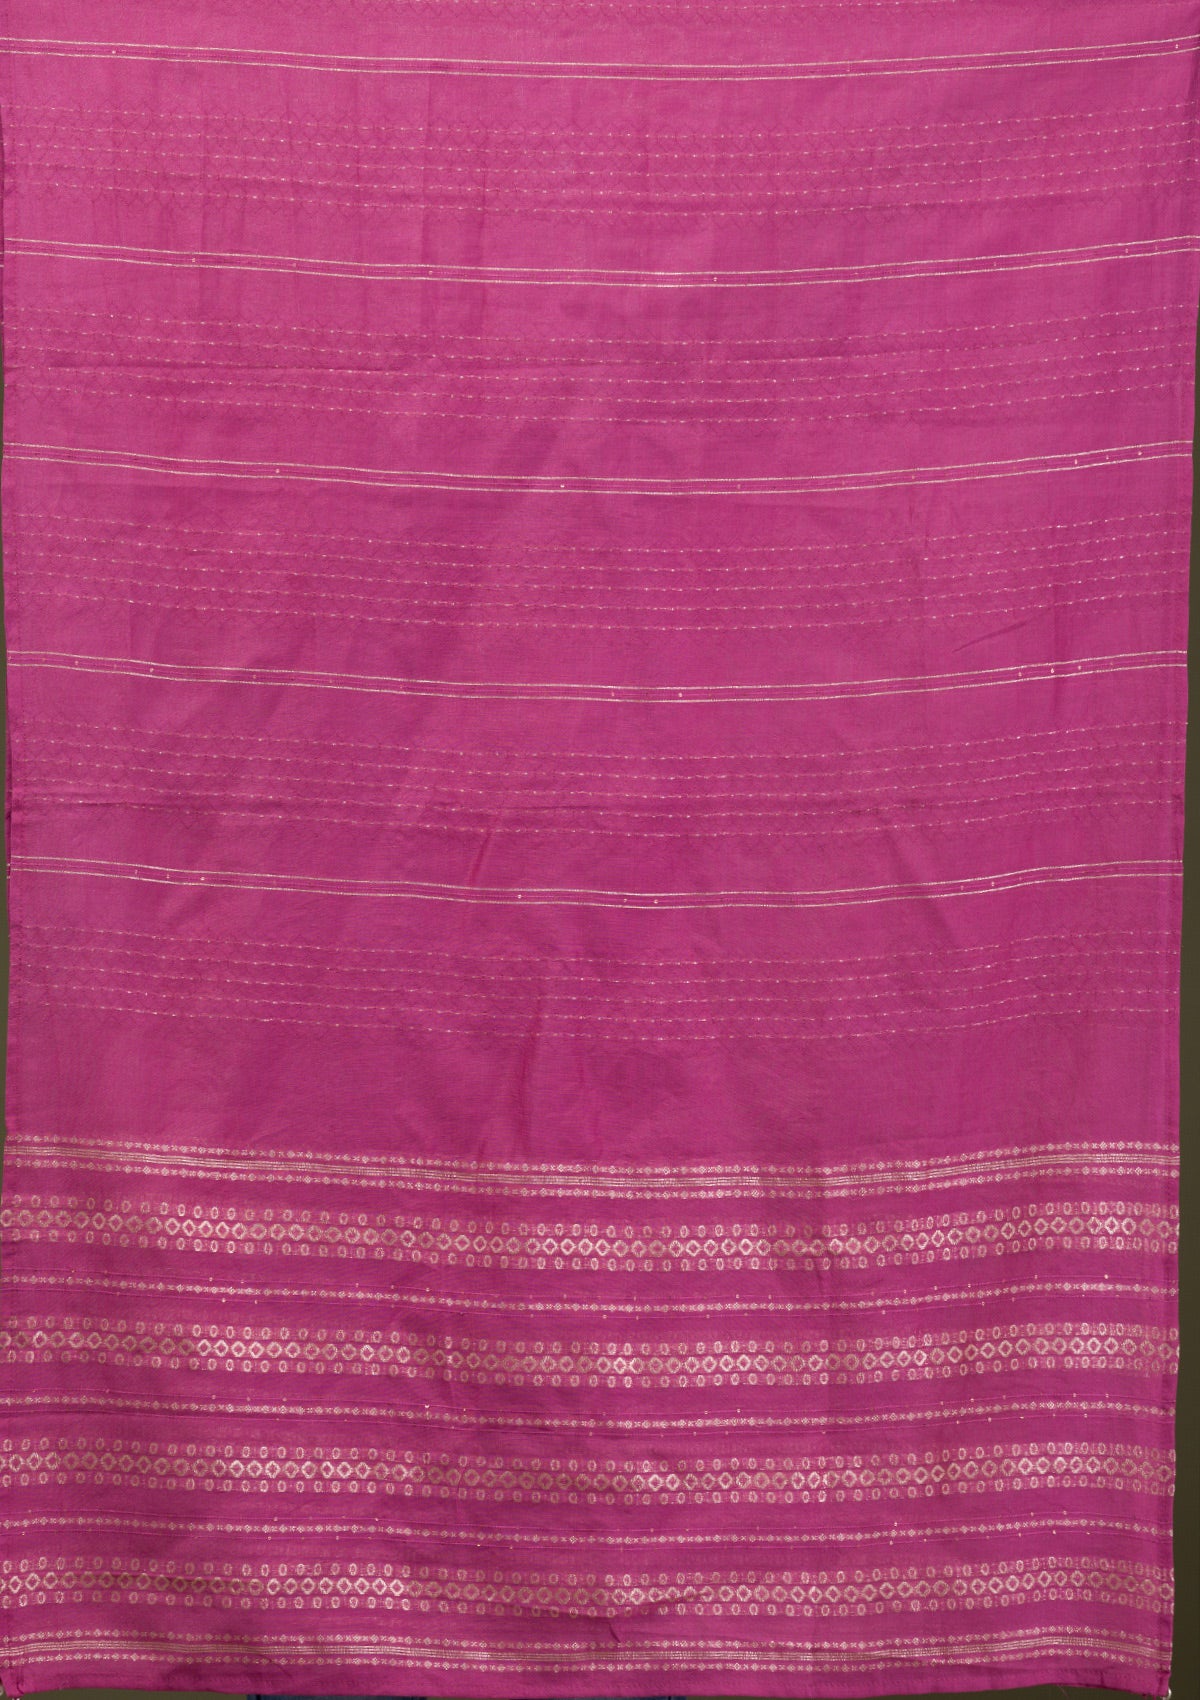 Onion Pink Zariwork Art Silk Readymade Salwar Suit